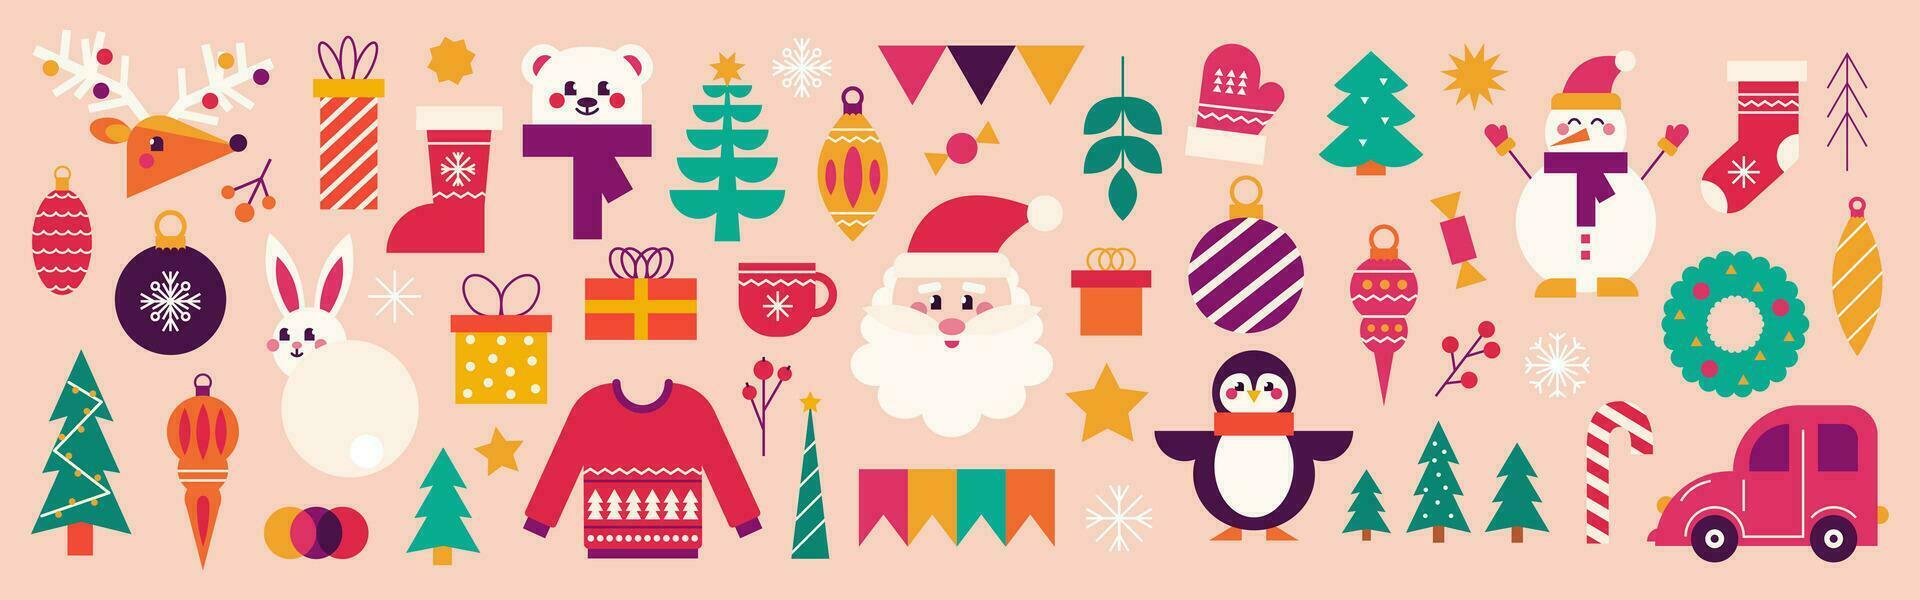 Weihnachten und Neu Jahr Satz. Weihnachtsmann, Geschenke, Weihnachten Baum, Hirsch und festlich Elemente. Vektor modern Illustration